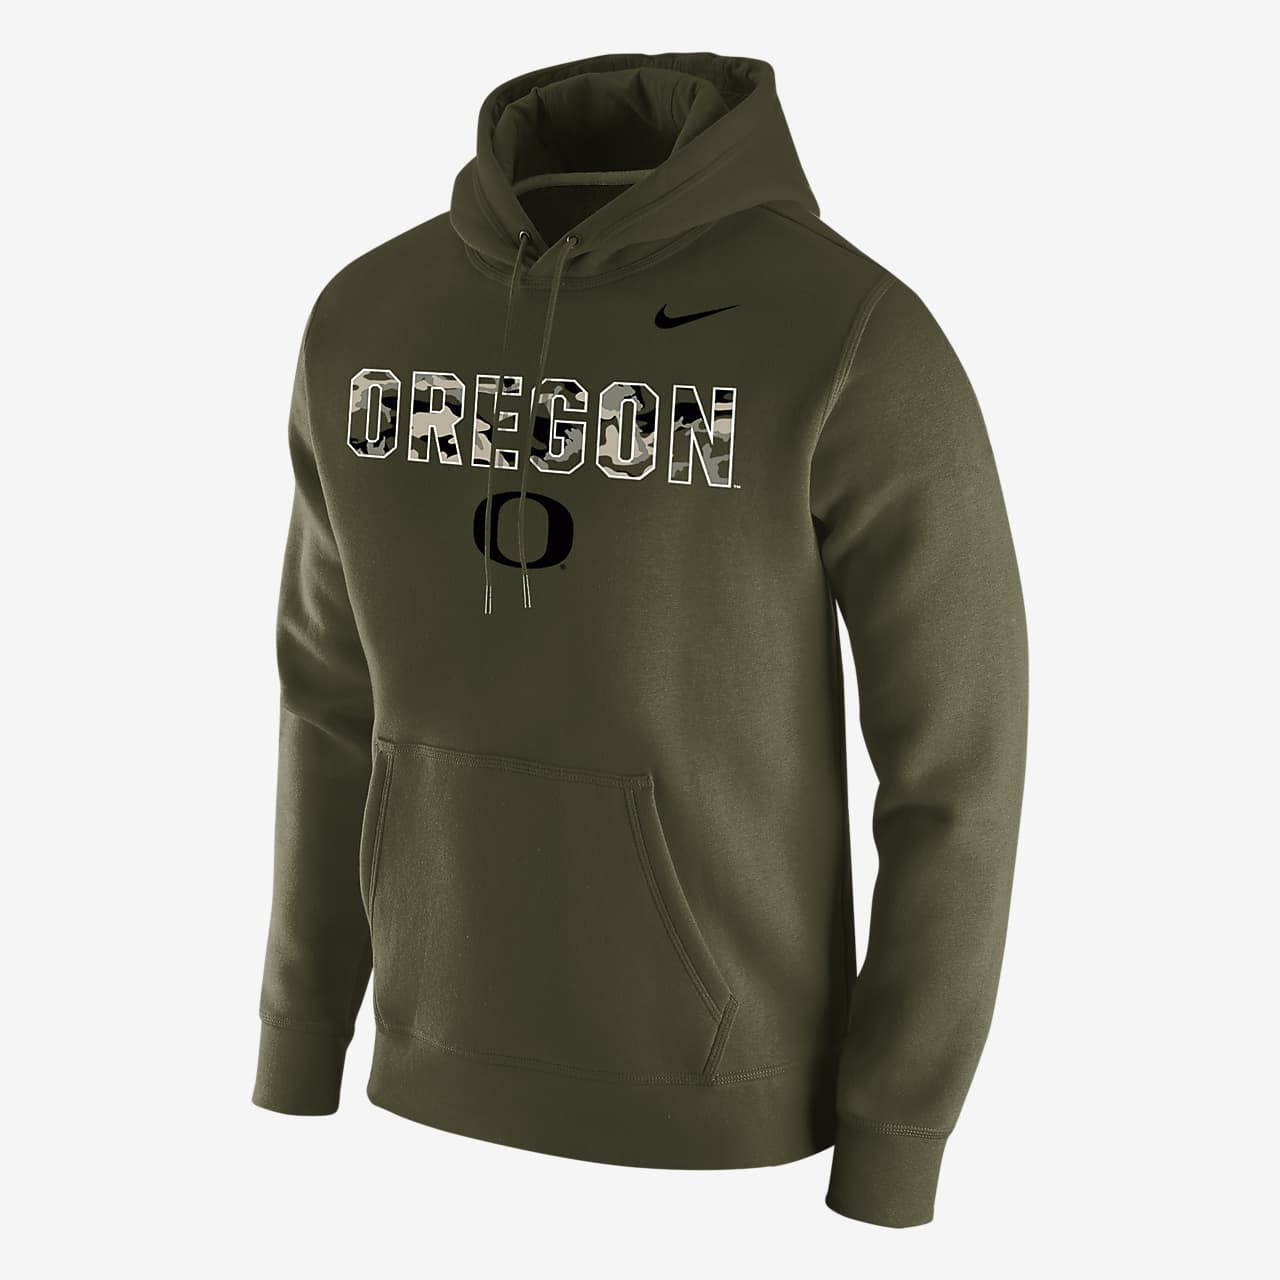 Nike College (Oregon) Men's Hoodie